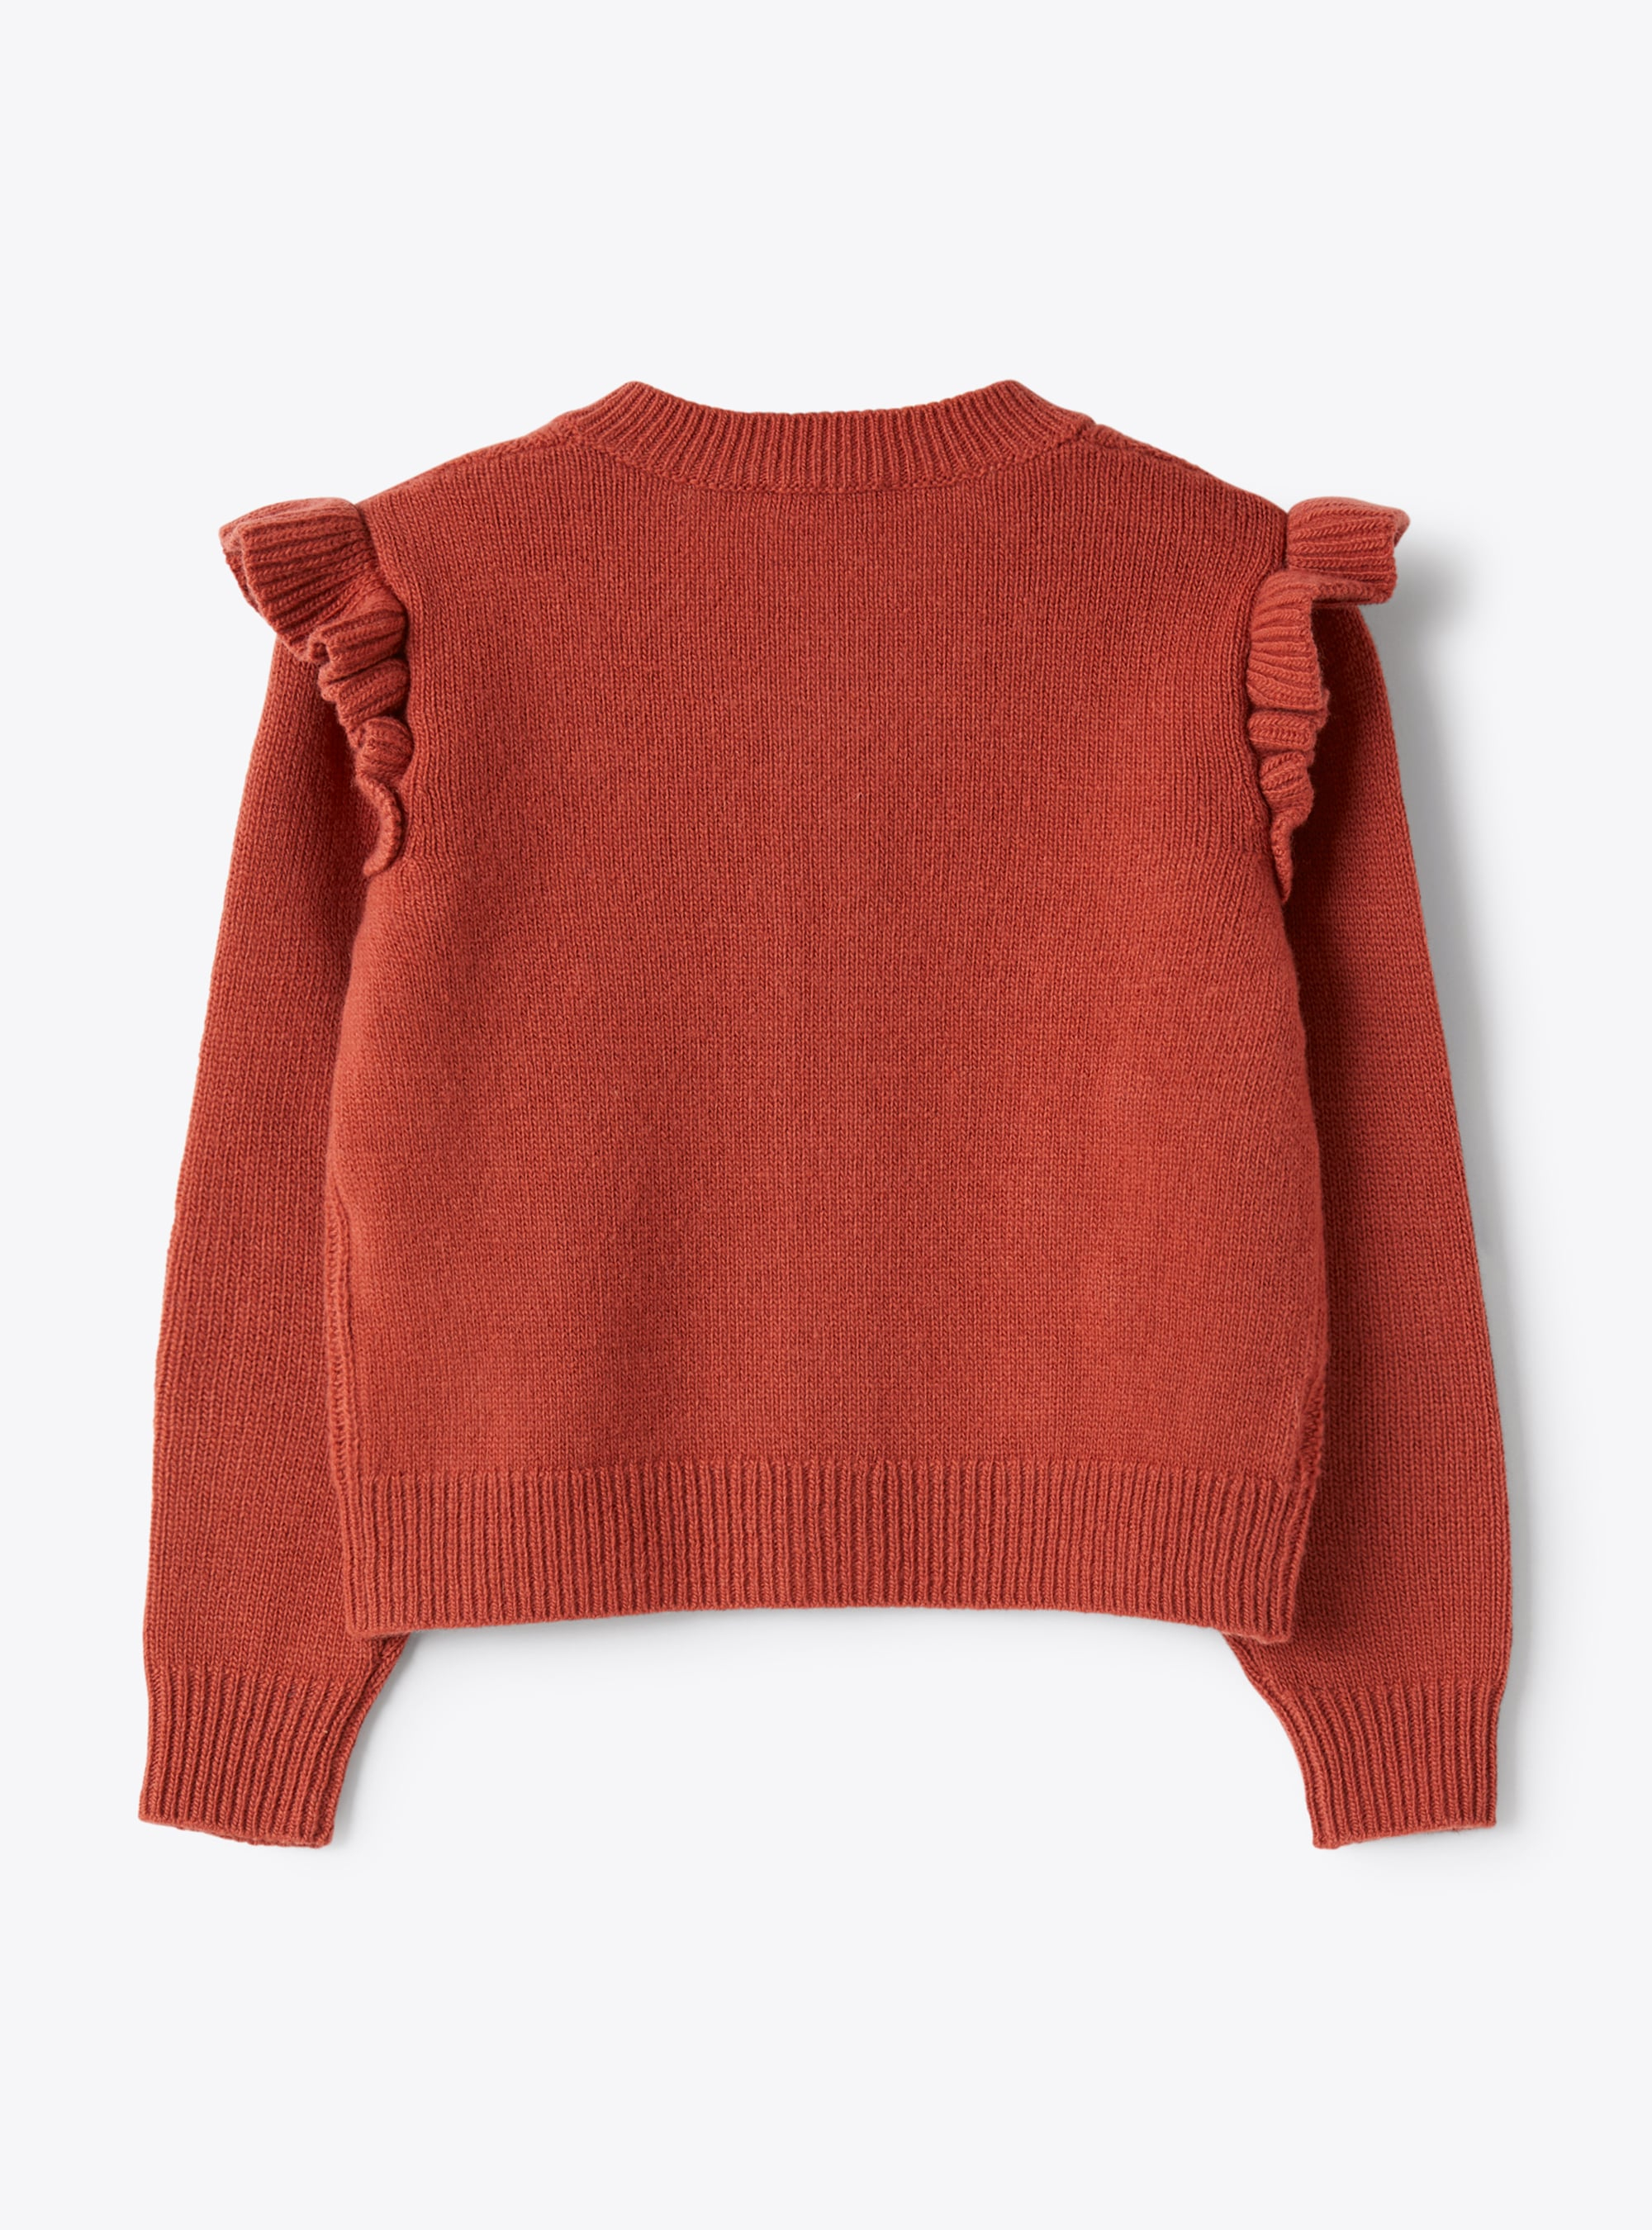 Wool cardigan with pompom embellishment - Orange | Il Gufo